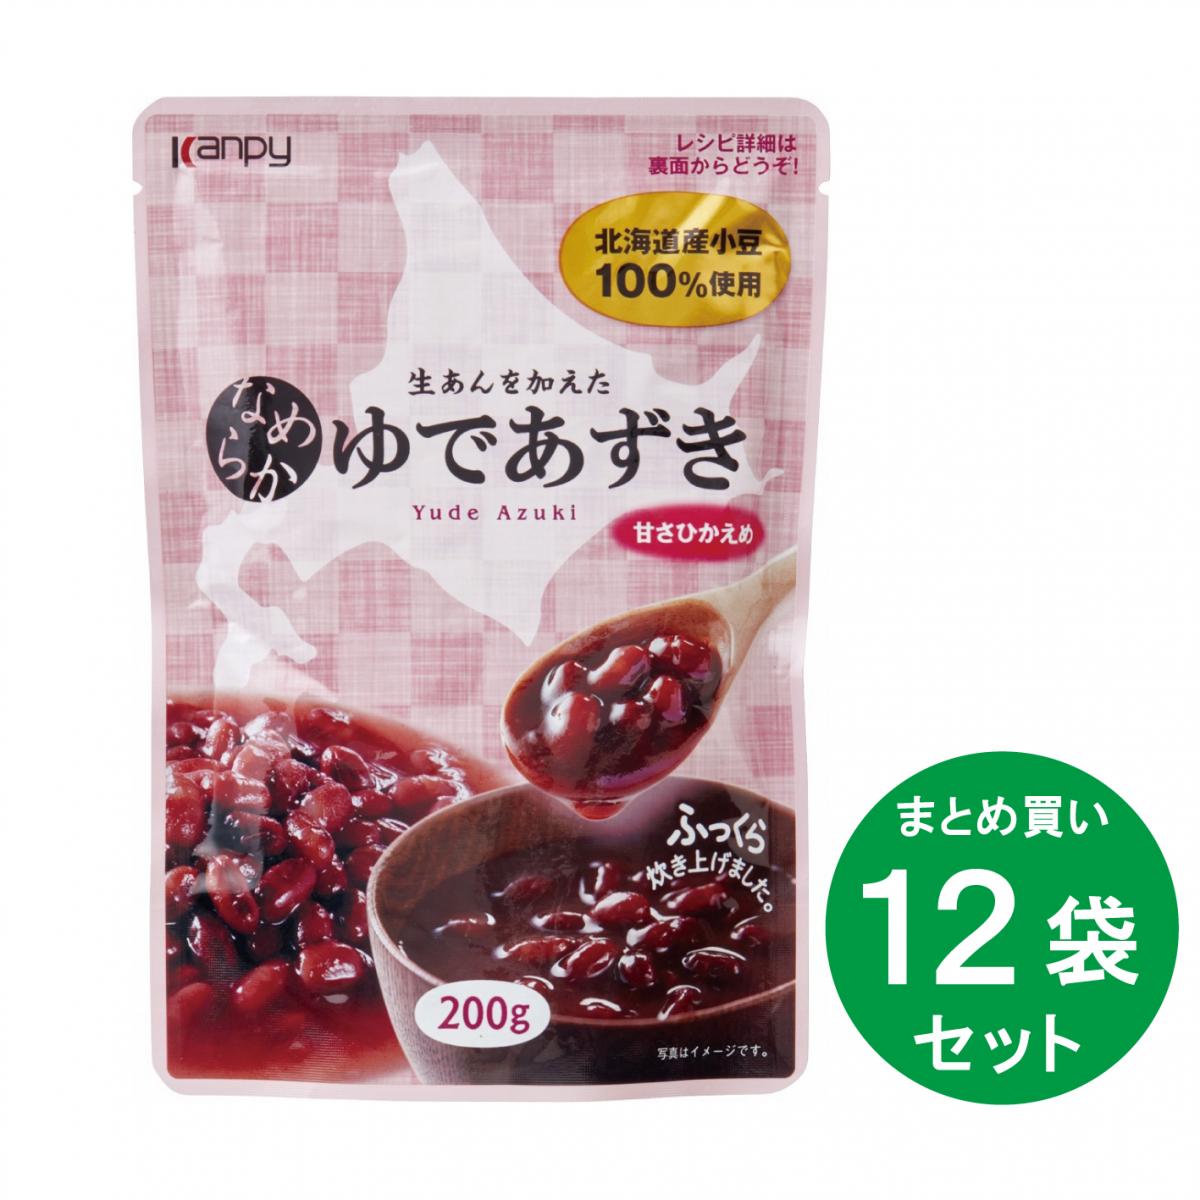 【まとめ買い】 なめらか ゆであずき 200g ×12袋 セット 甘さひかえめ 北海道産 小豆 パウチ 箱買い カンピー